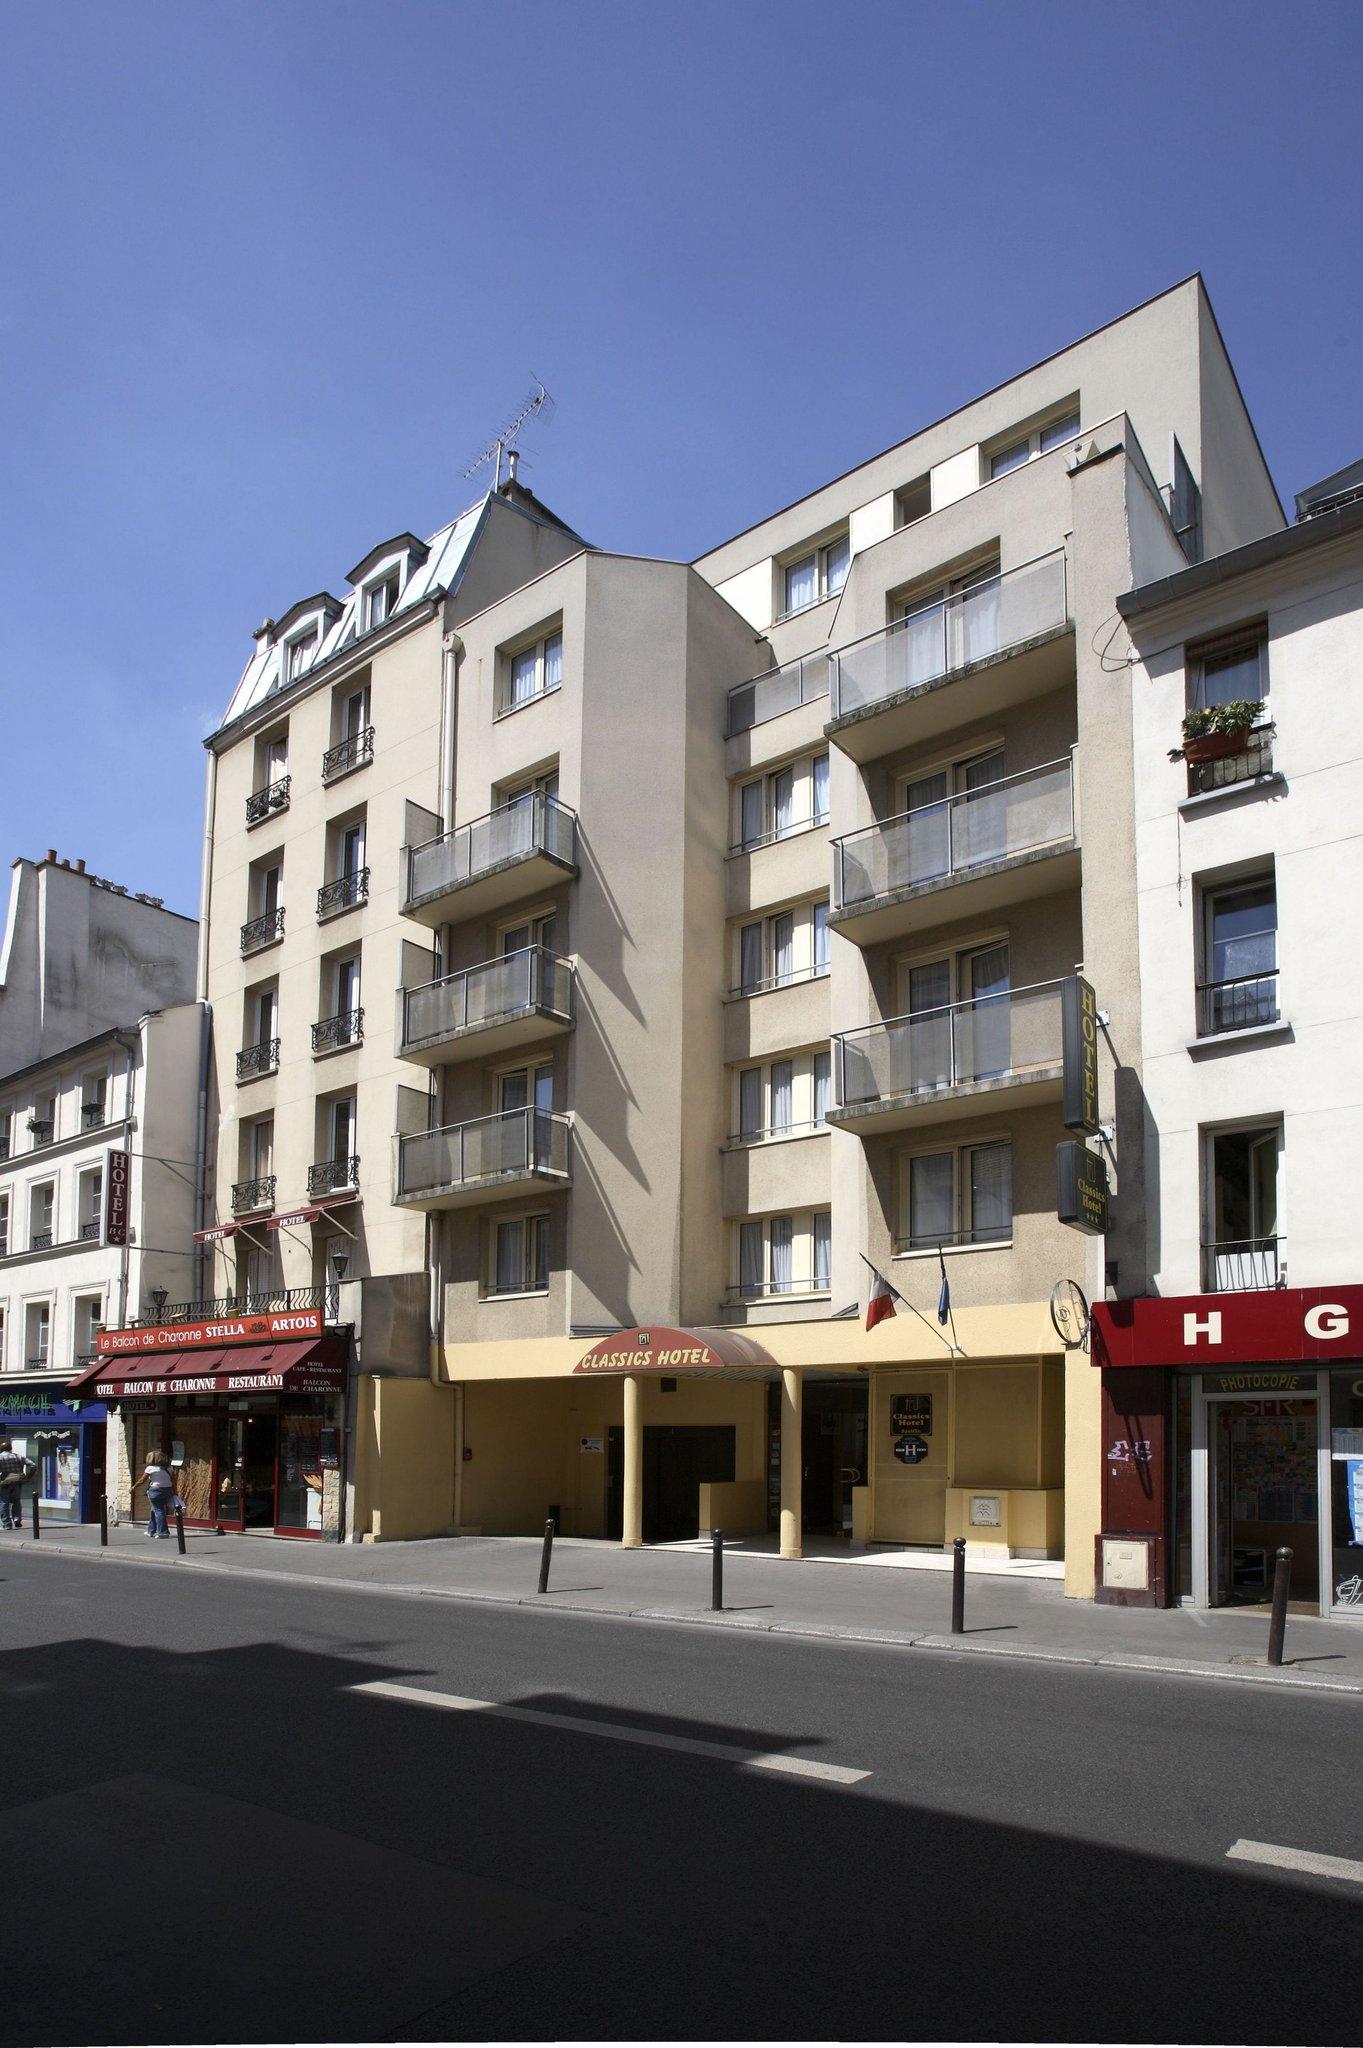 Classics Hotel Paris Bastille in Paris, FR